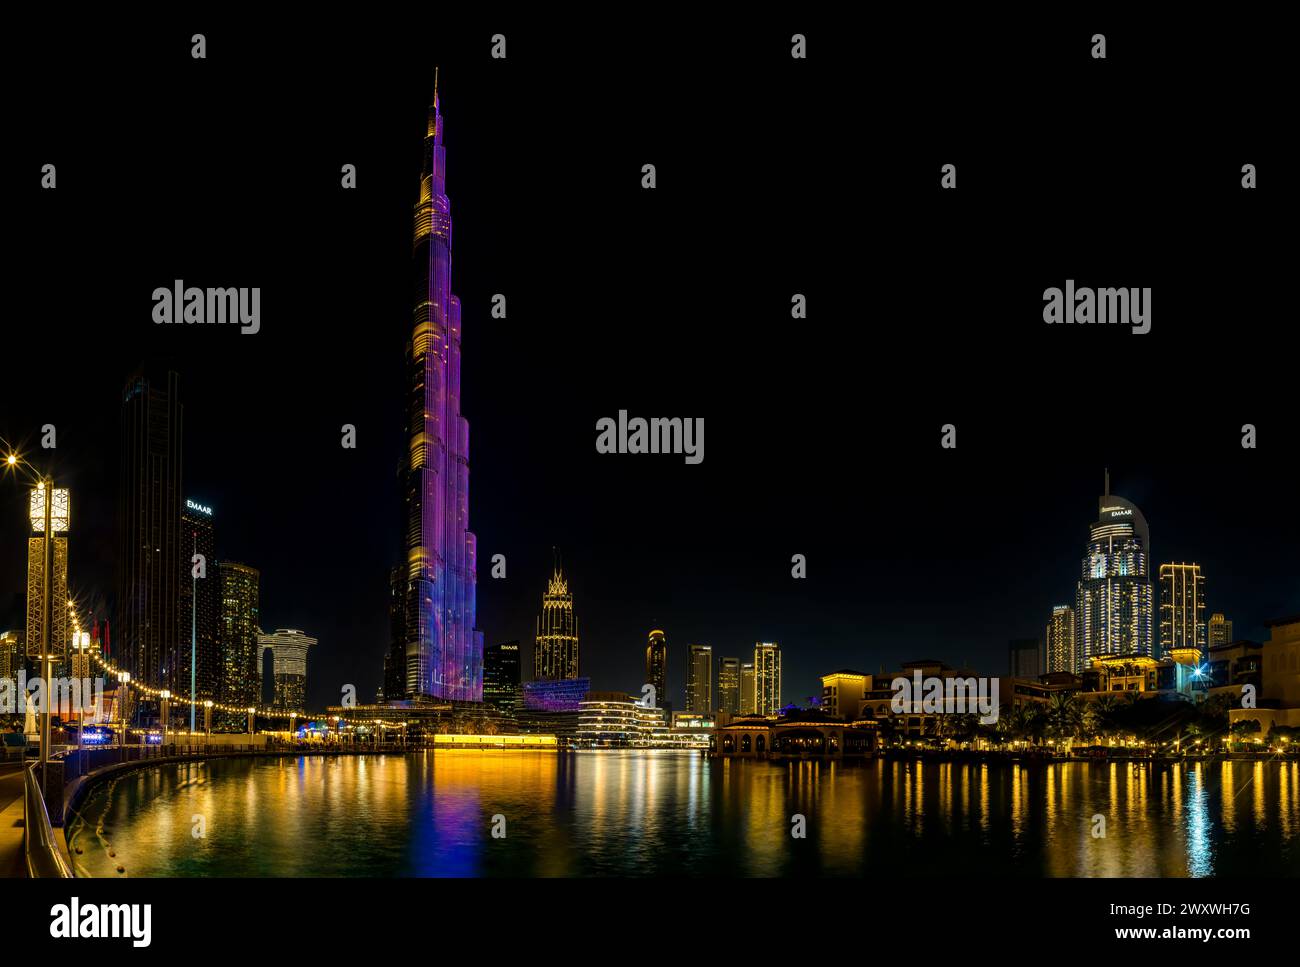 Una imagen del icónico Burj Khalifa con su espectáculo de luces, y los edificios del centro de Dubai y el lago Burj Khalifa, en la noche. Foto de stock